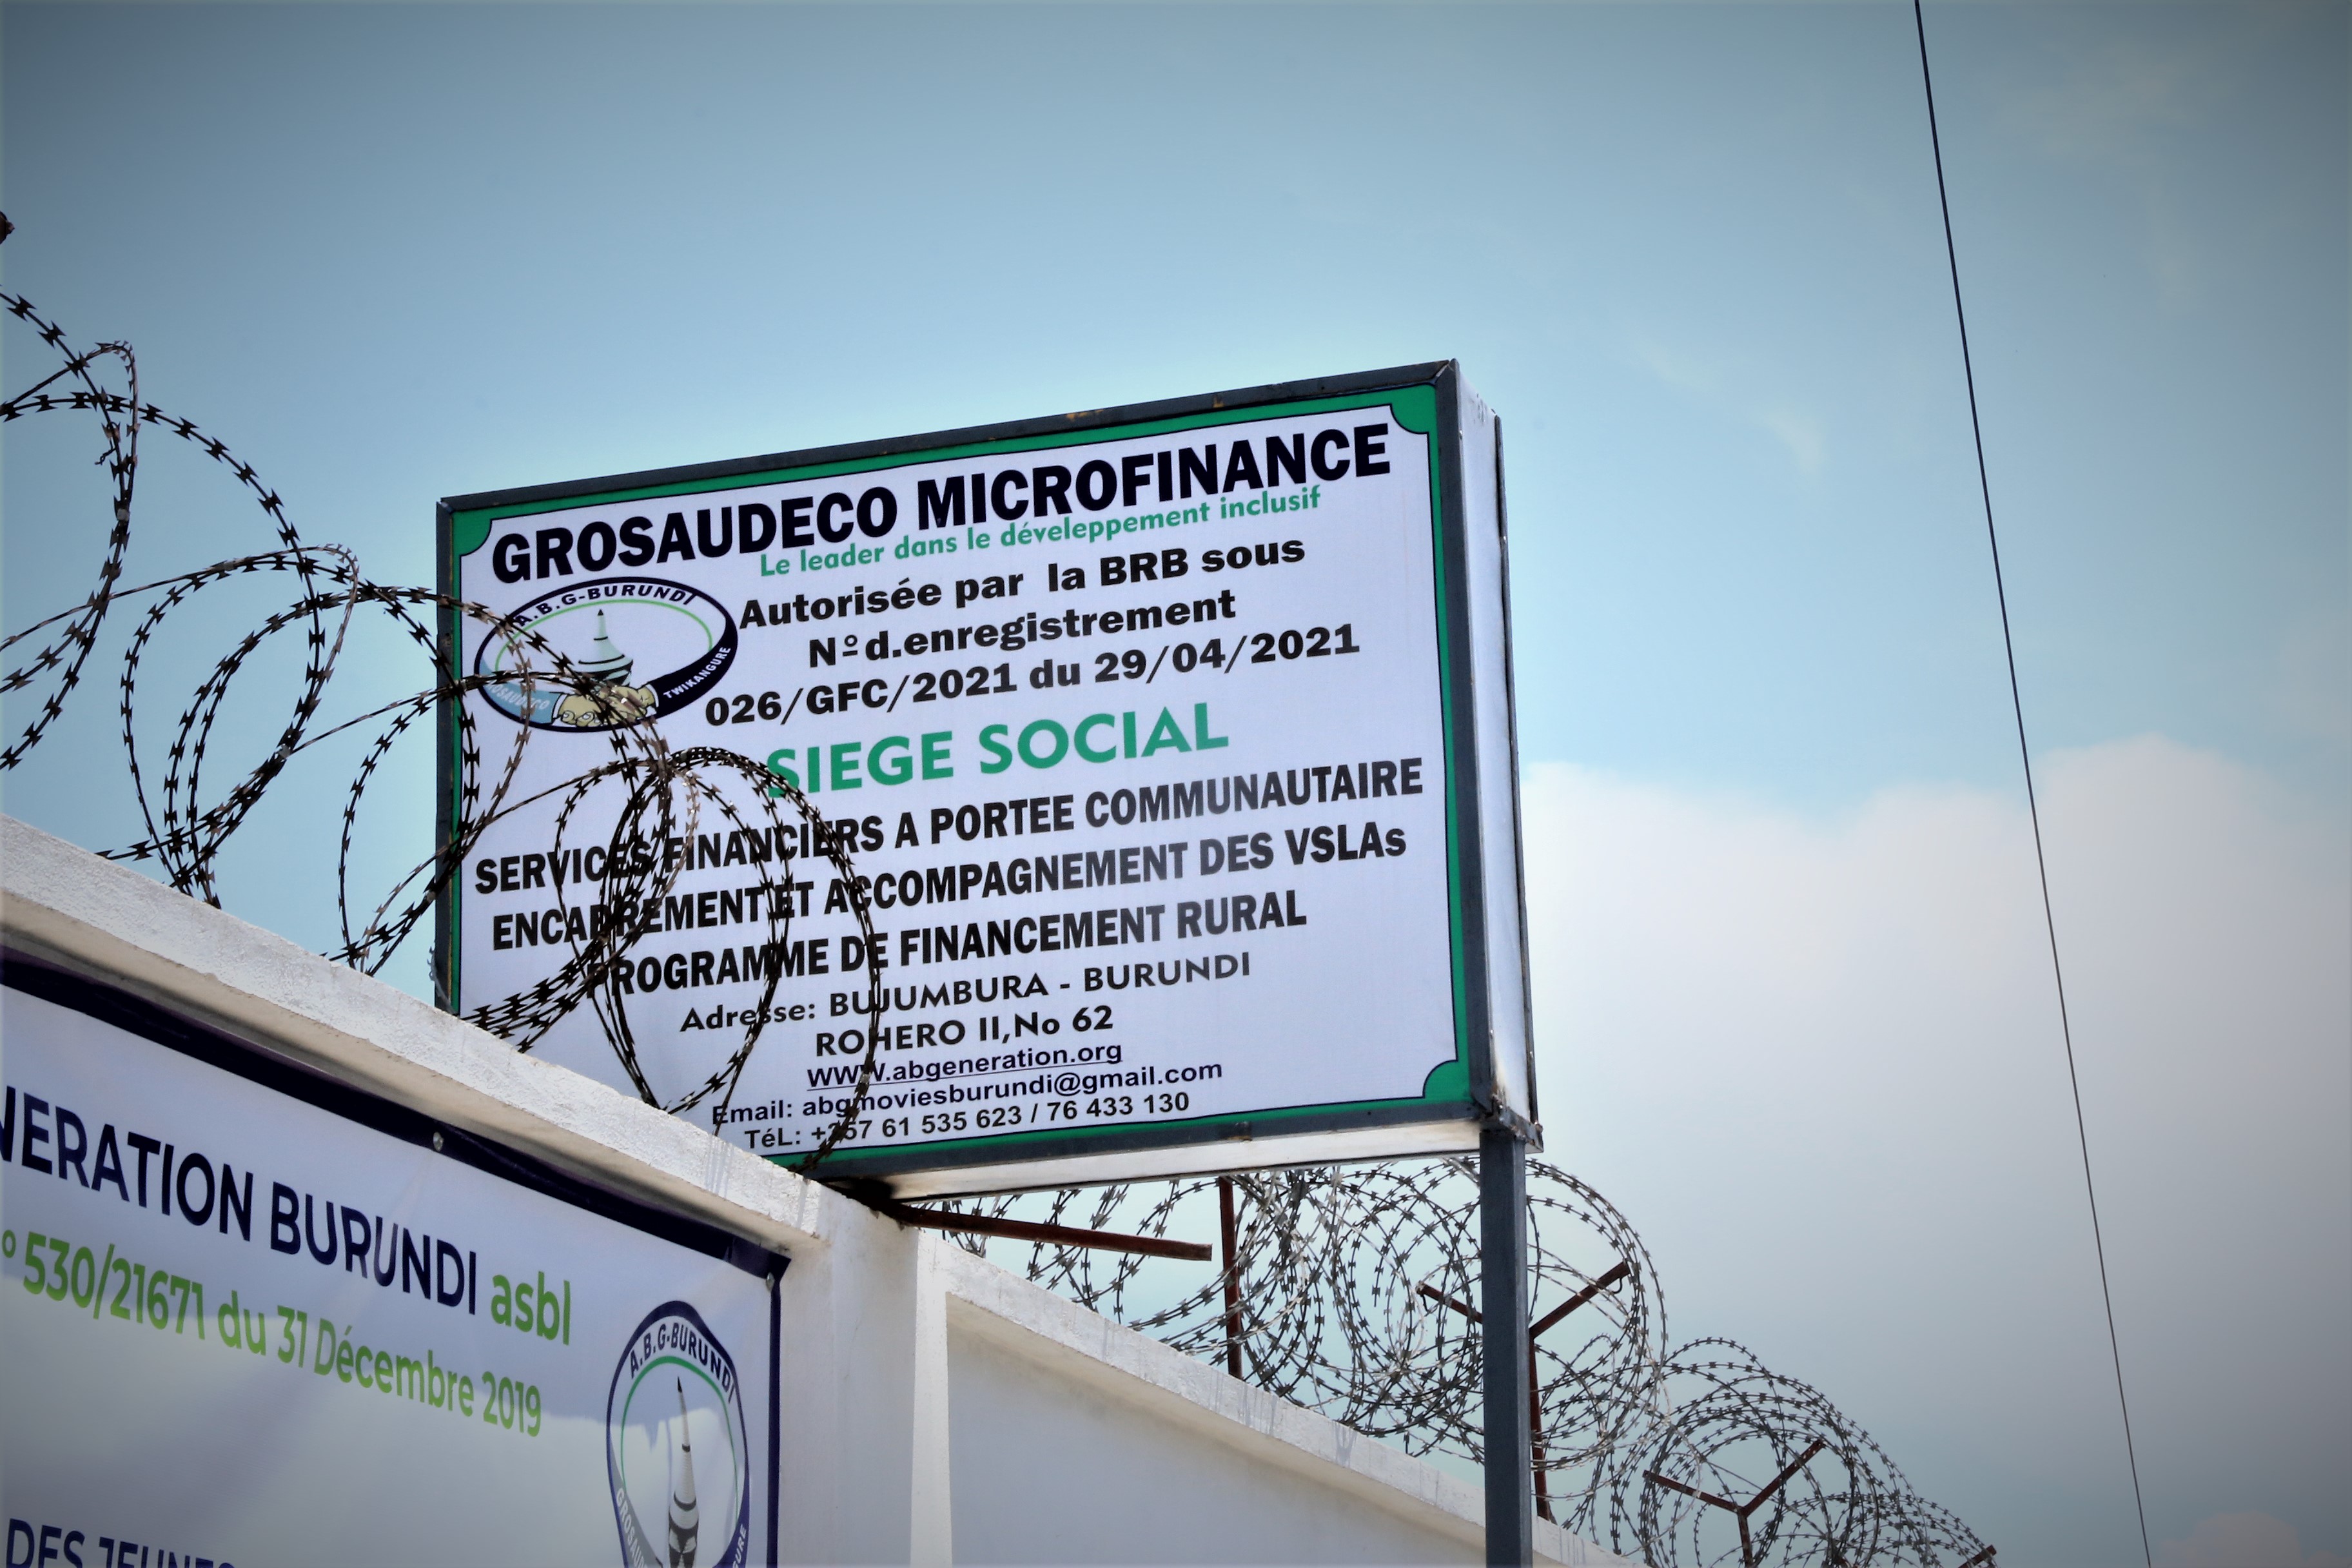 Microfinance GROSAUDECO : La Réussite, ce n'est pas du Sorcier